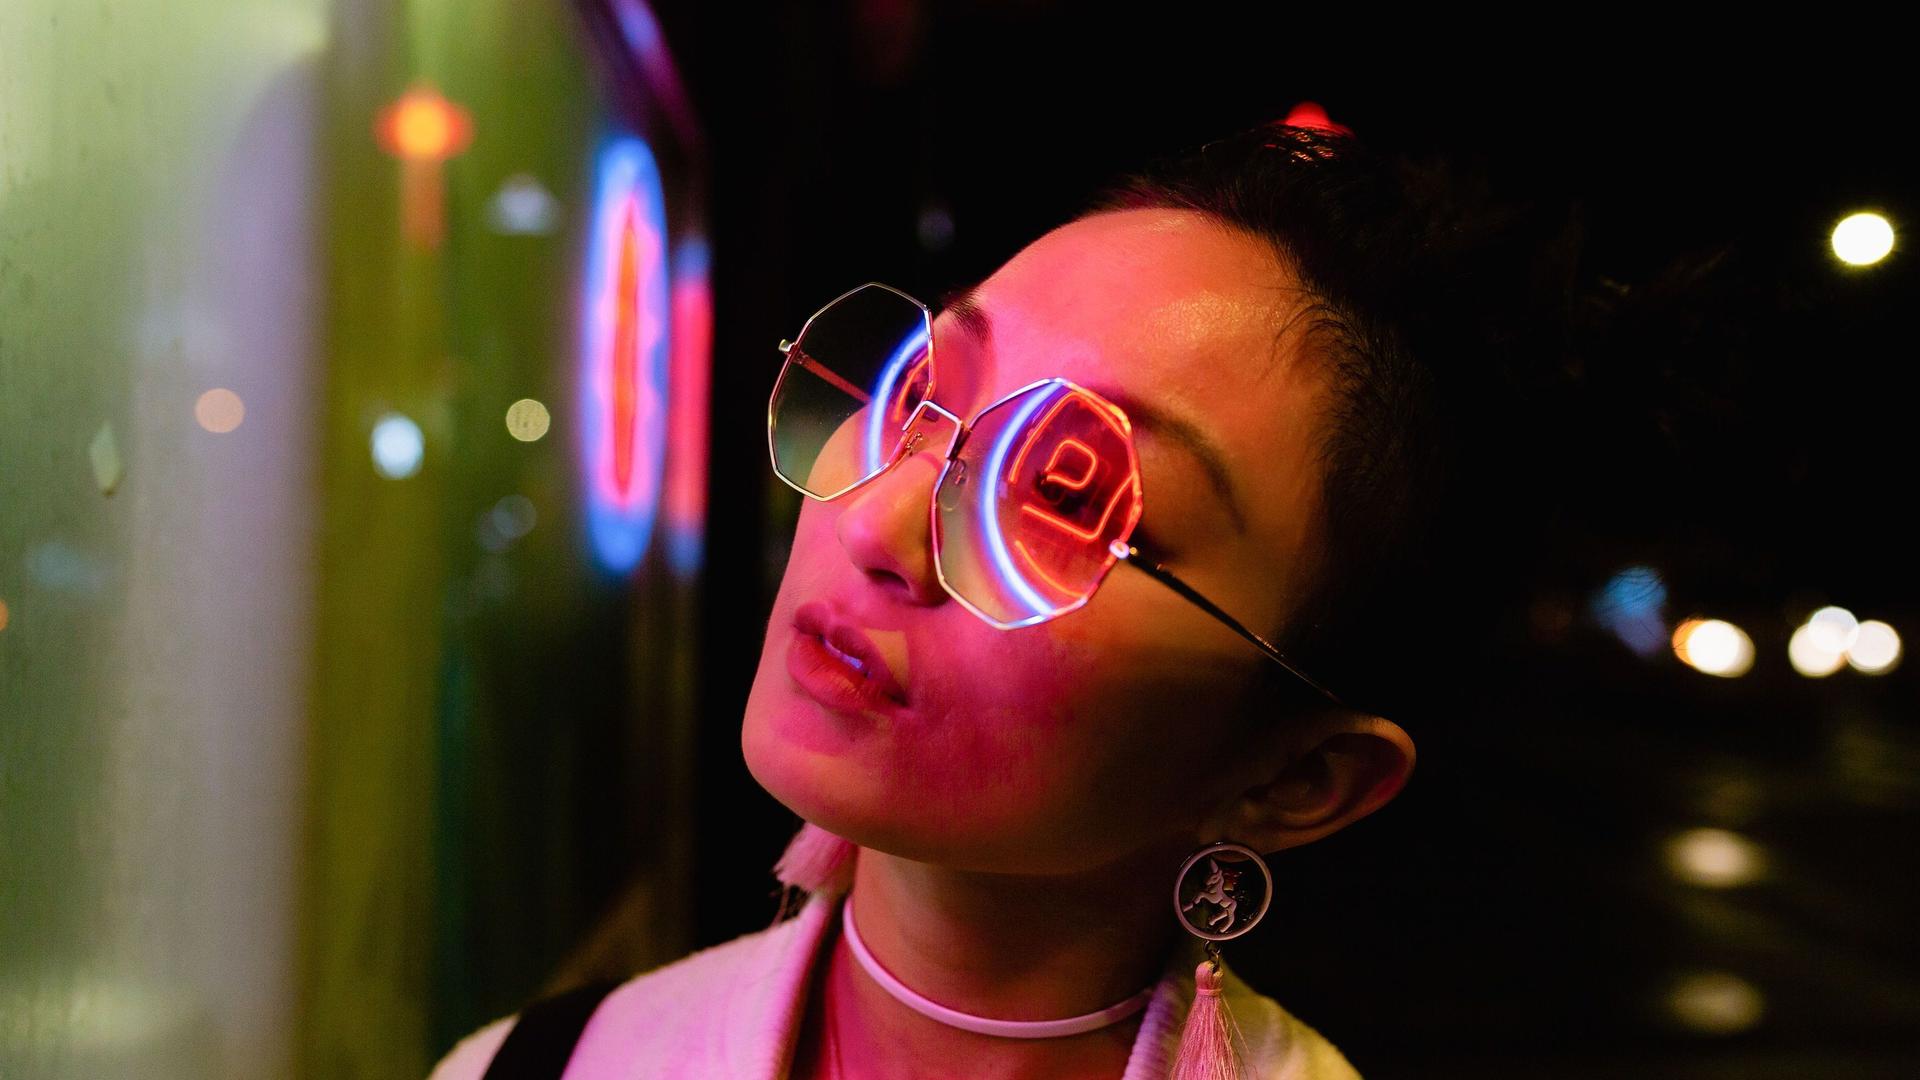 Nächtliches Porträt einer jungen Frau, die zur Seite schaut. LED Lichter reflektieren sich in ihrer großen Brille.